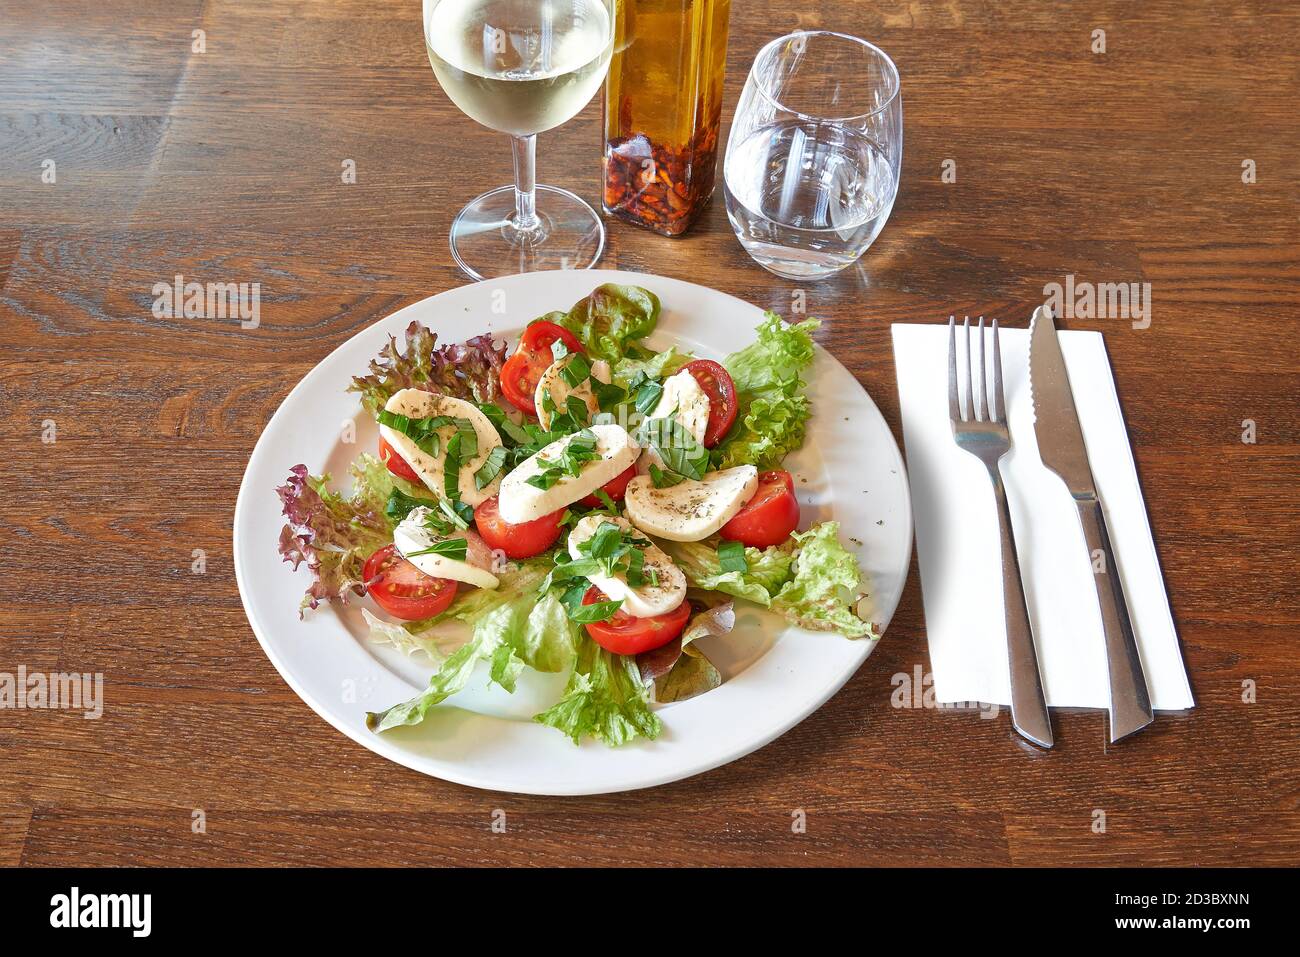 Couverts sur table en bois brun et assiette blanche avec tomates et mozzarella sur salade. Banque D'Images